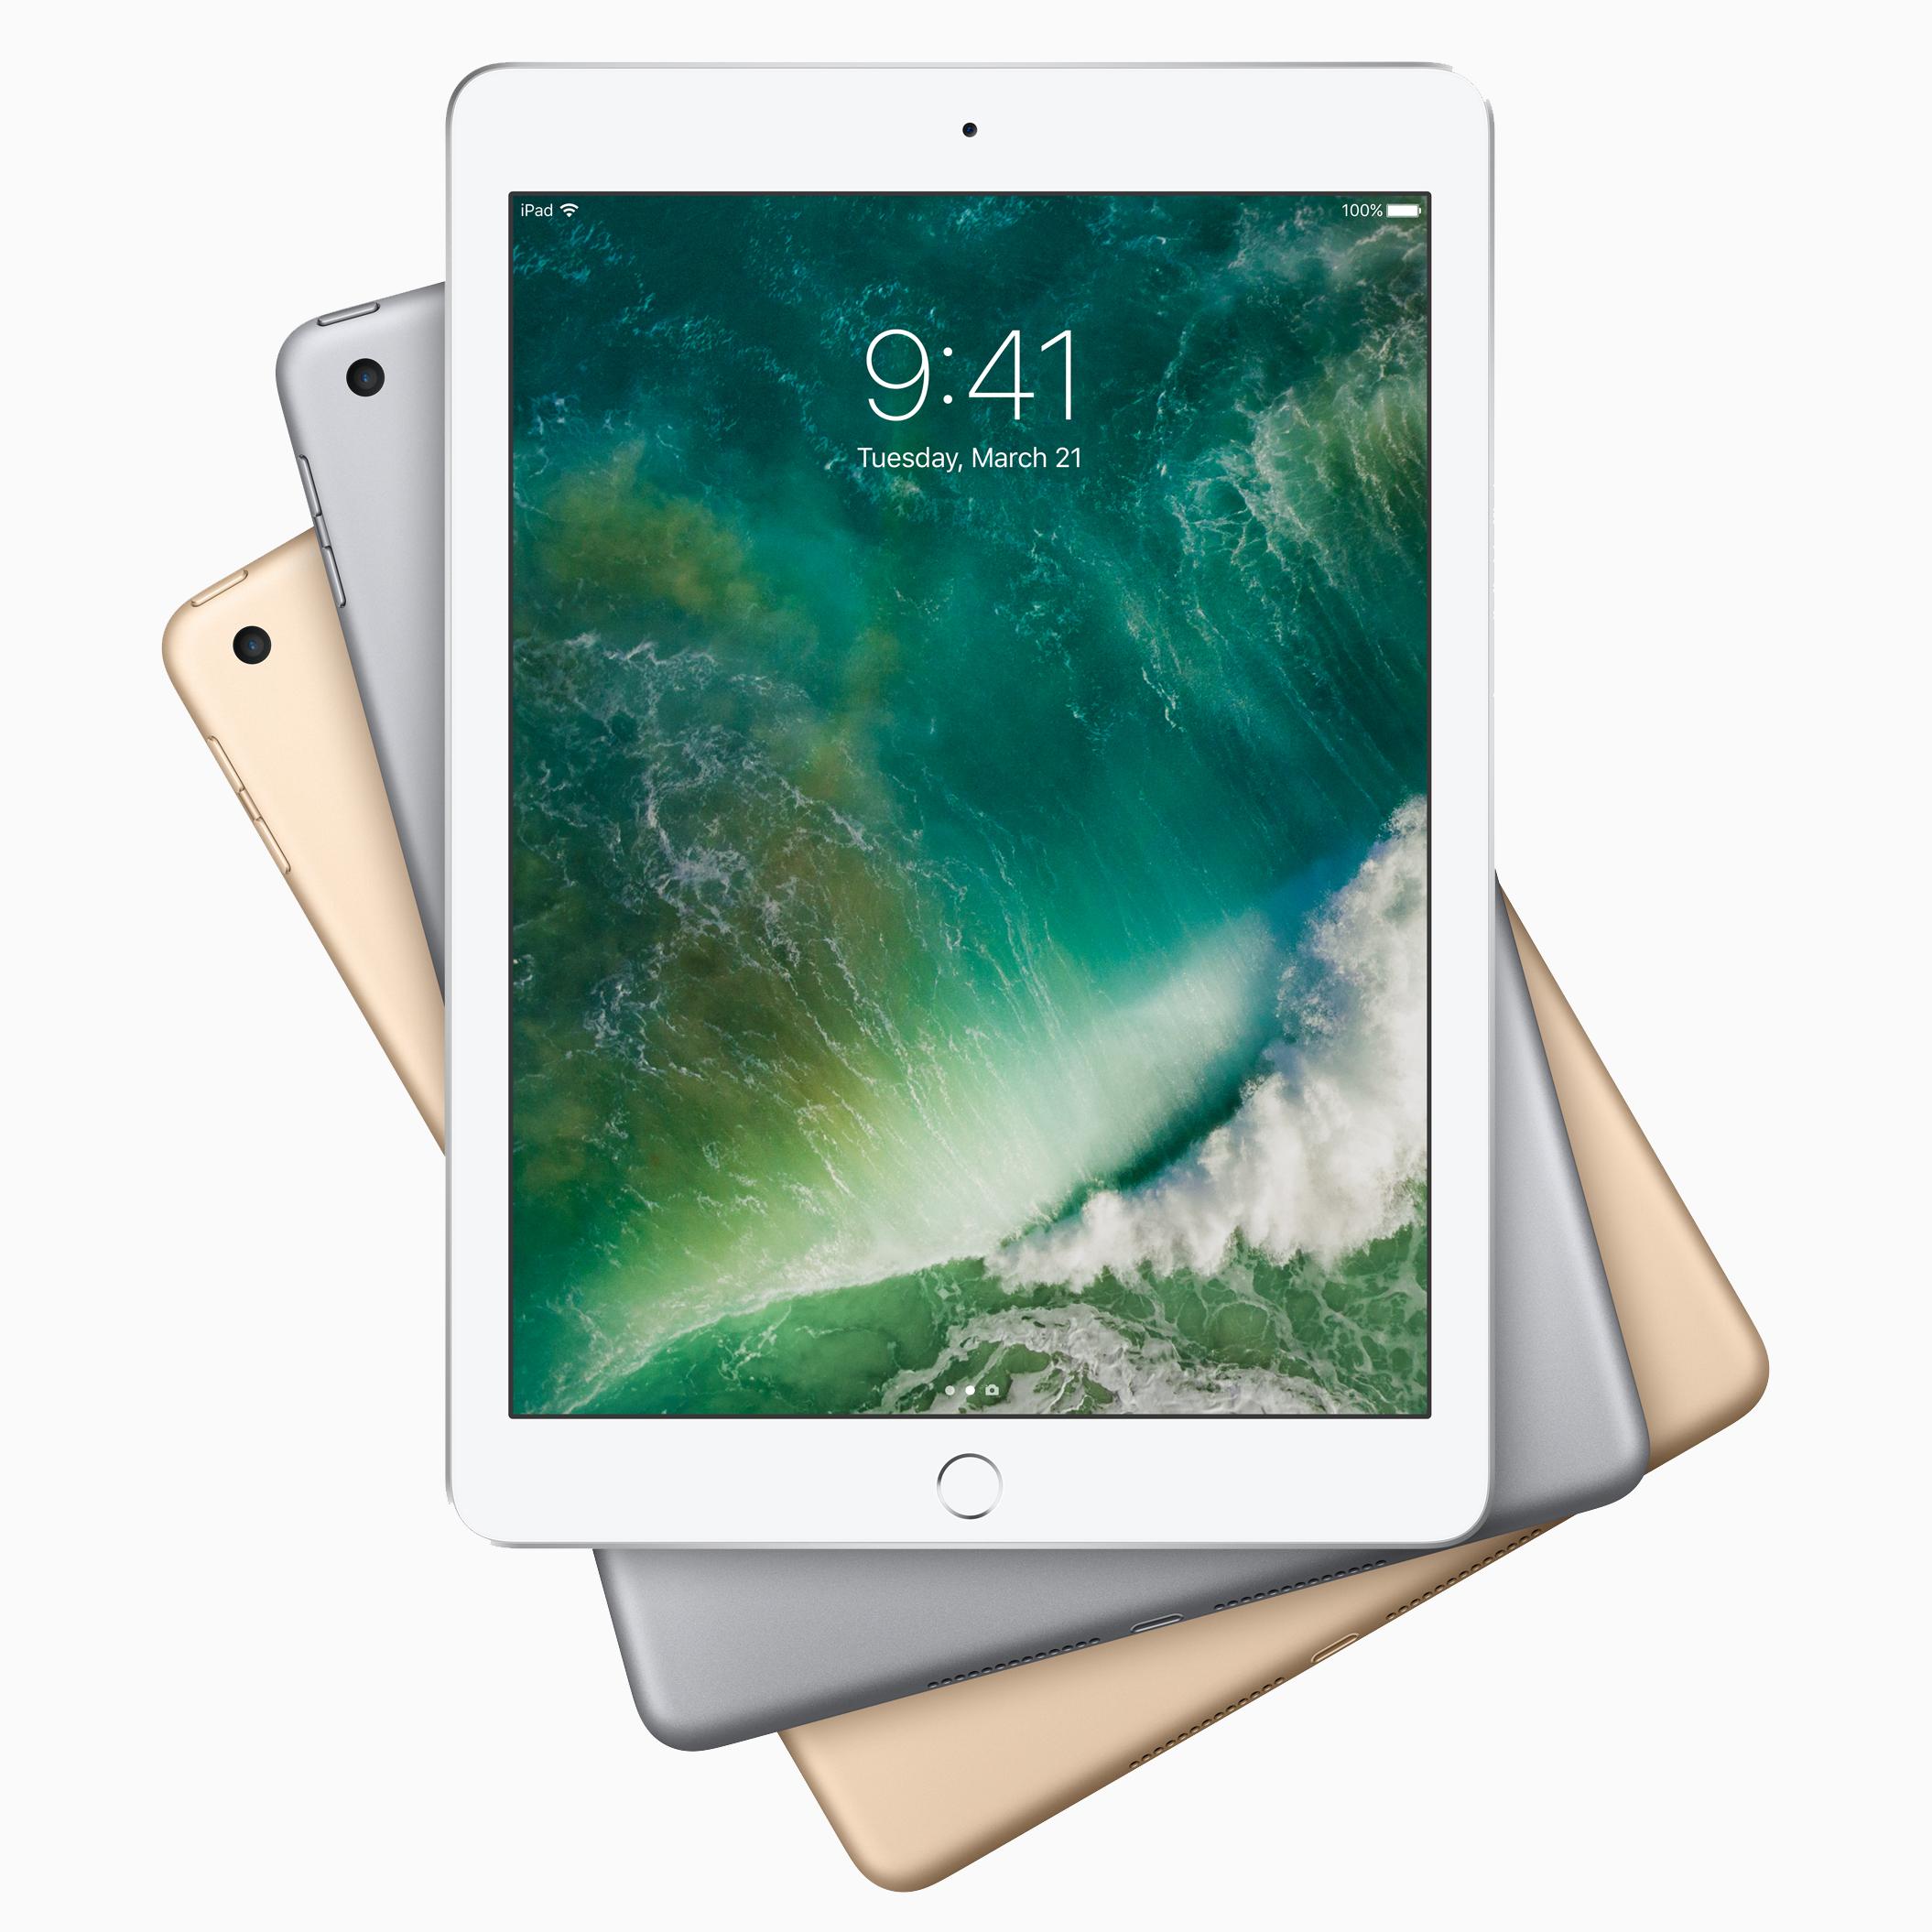 Apple 苹果 2017款 iPad 9.7英寸 平板电脑 32GB